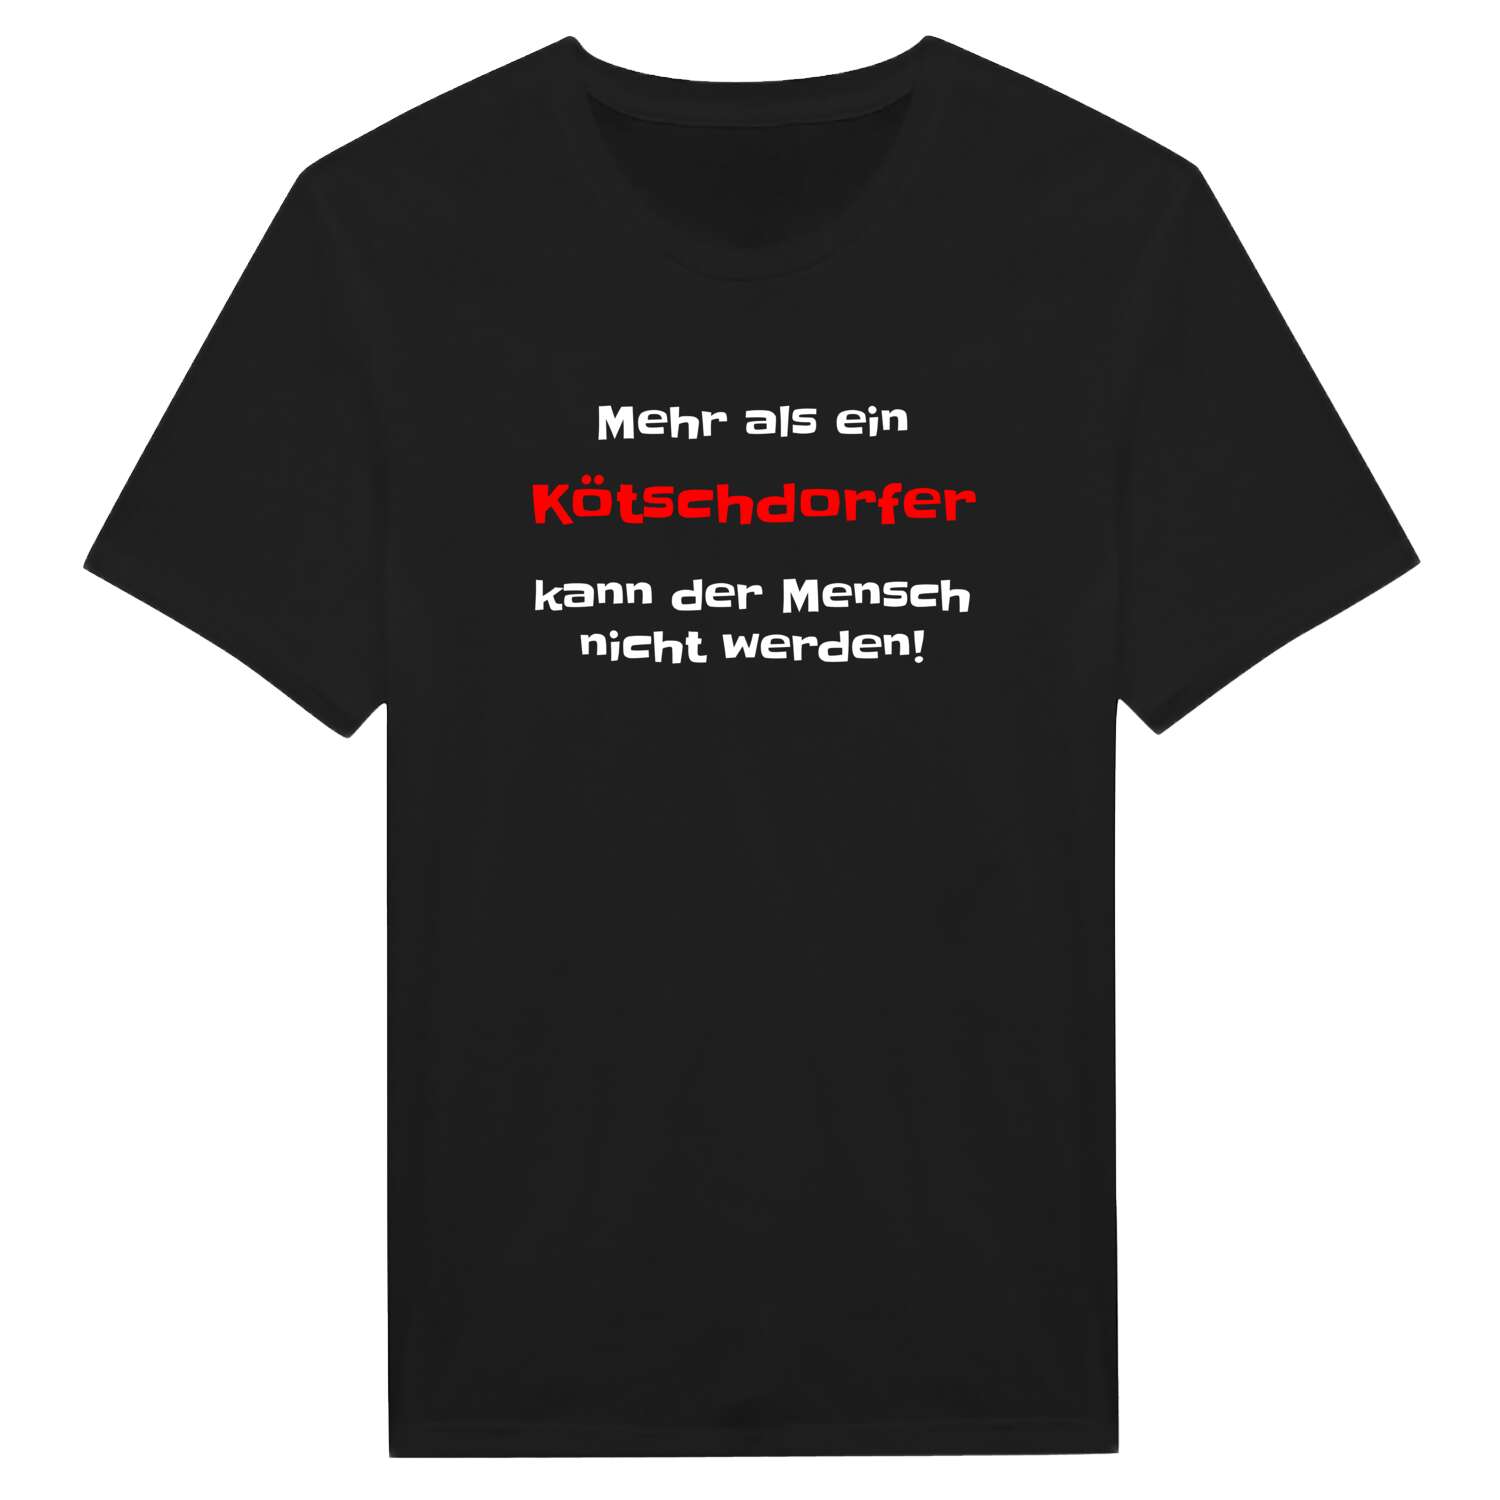 Kötschdorf T-Shirt »Mehr als ein«